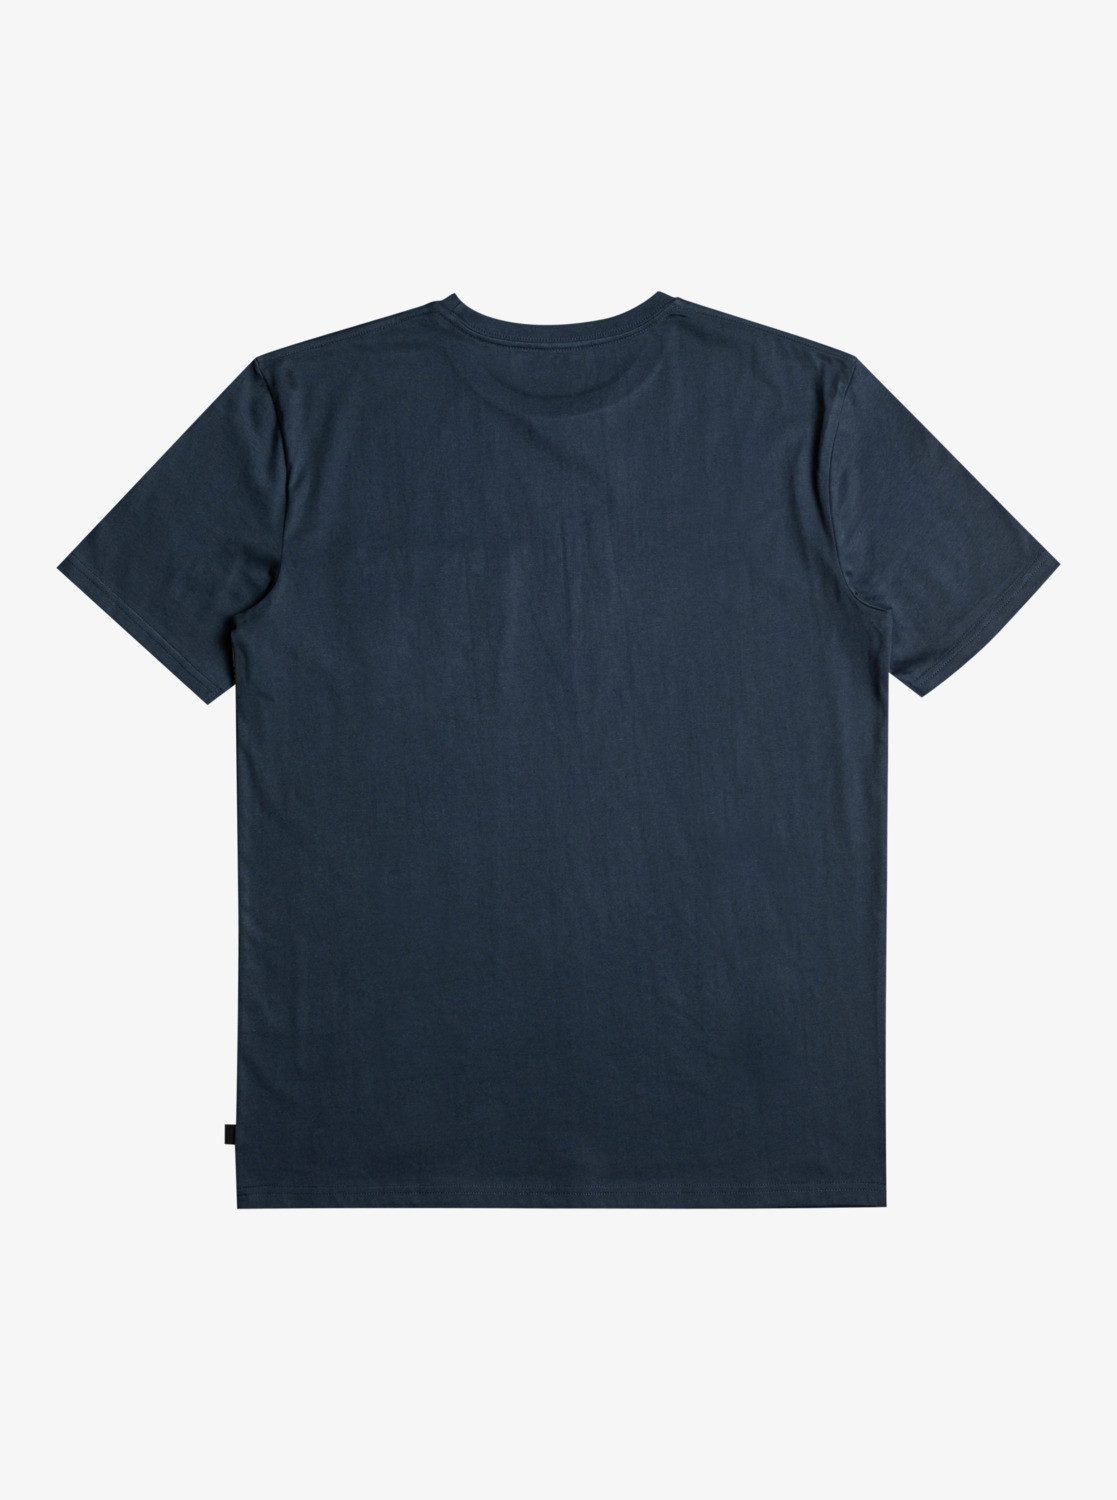 T-Shirt Blazer Stripe Quiksilver Surfadelica Navy